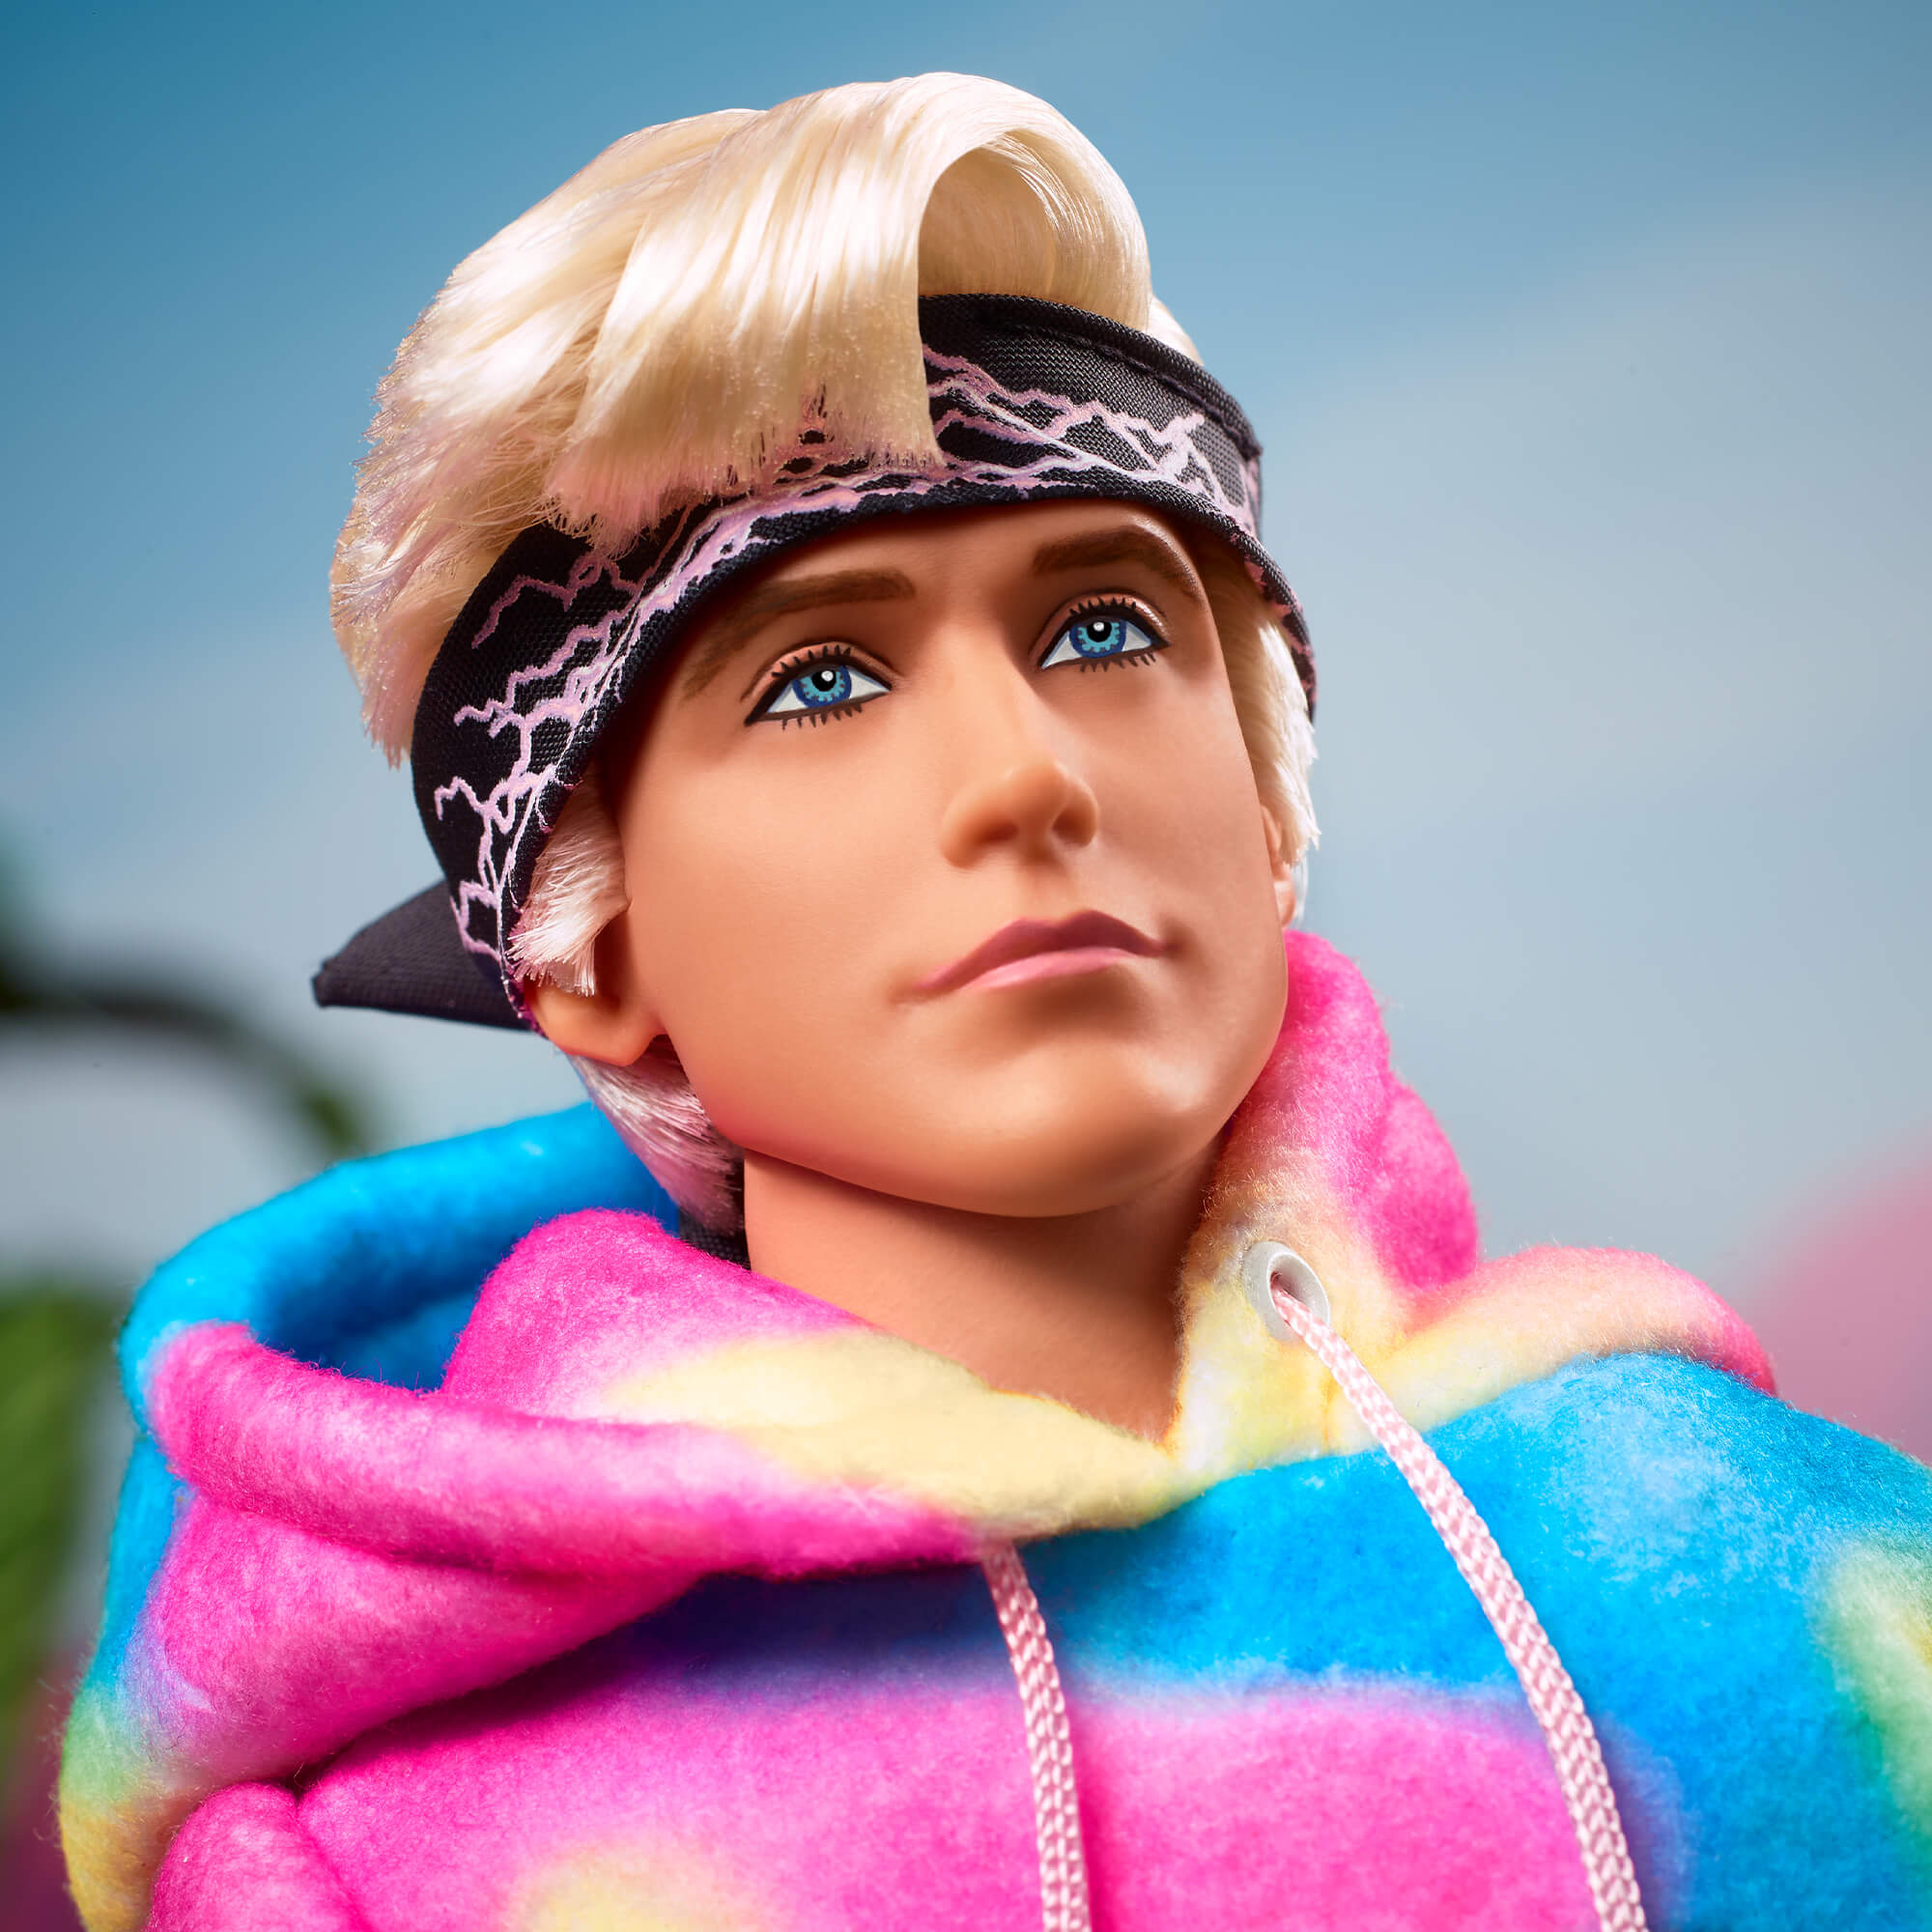 Ken Doll Wearing “I Am Kenough” Hoodie – Barbie The Movie